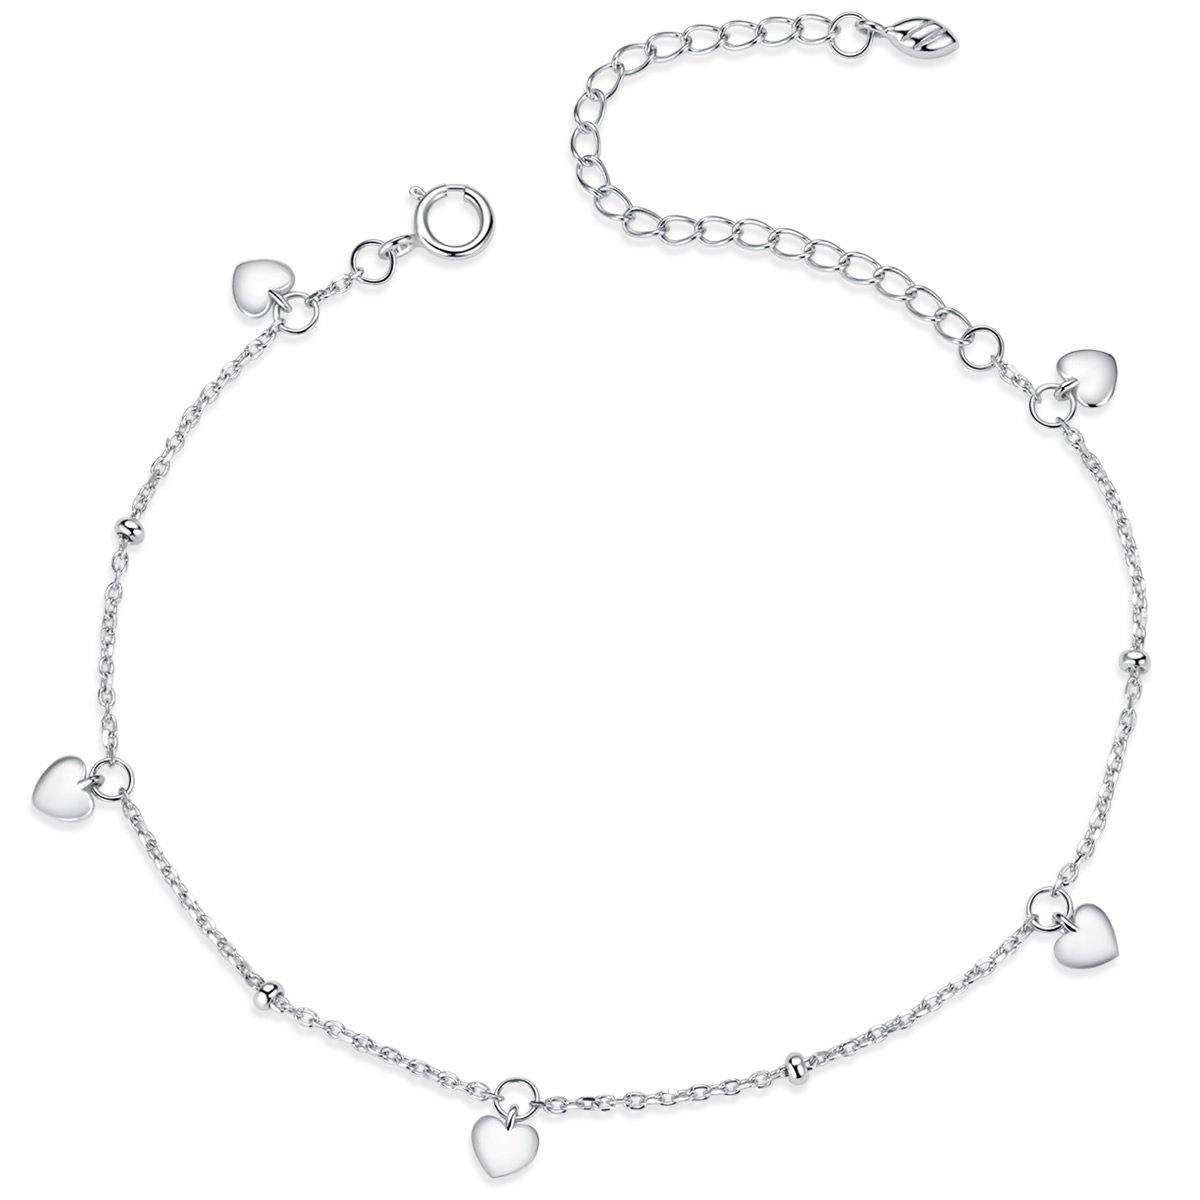 Loving Heart 925 Sterling Silver Bracelet - Aisllin Jewelry